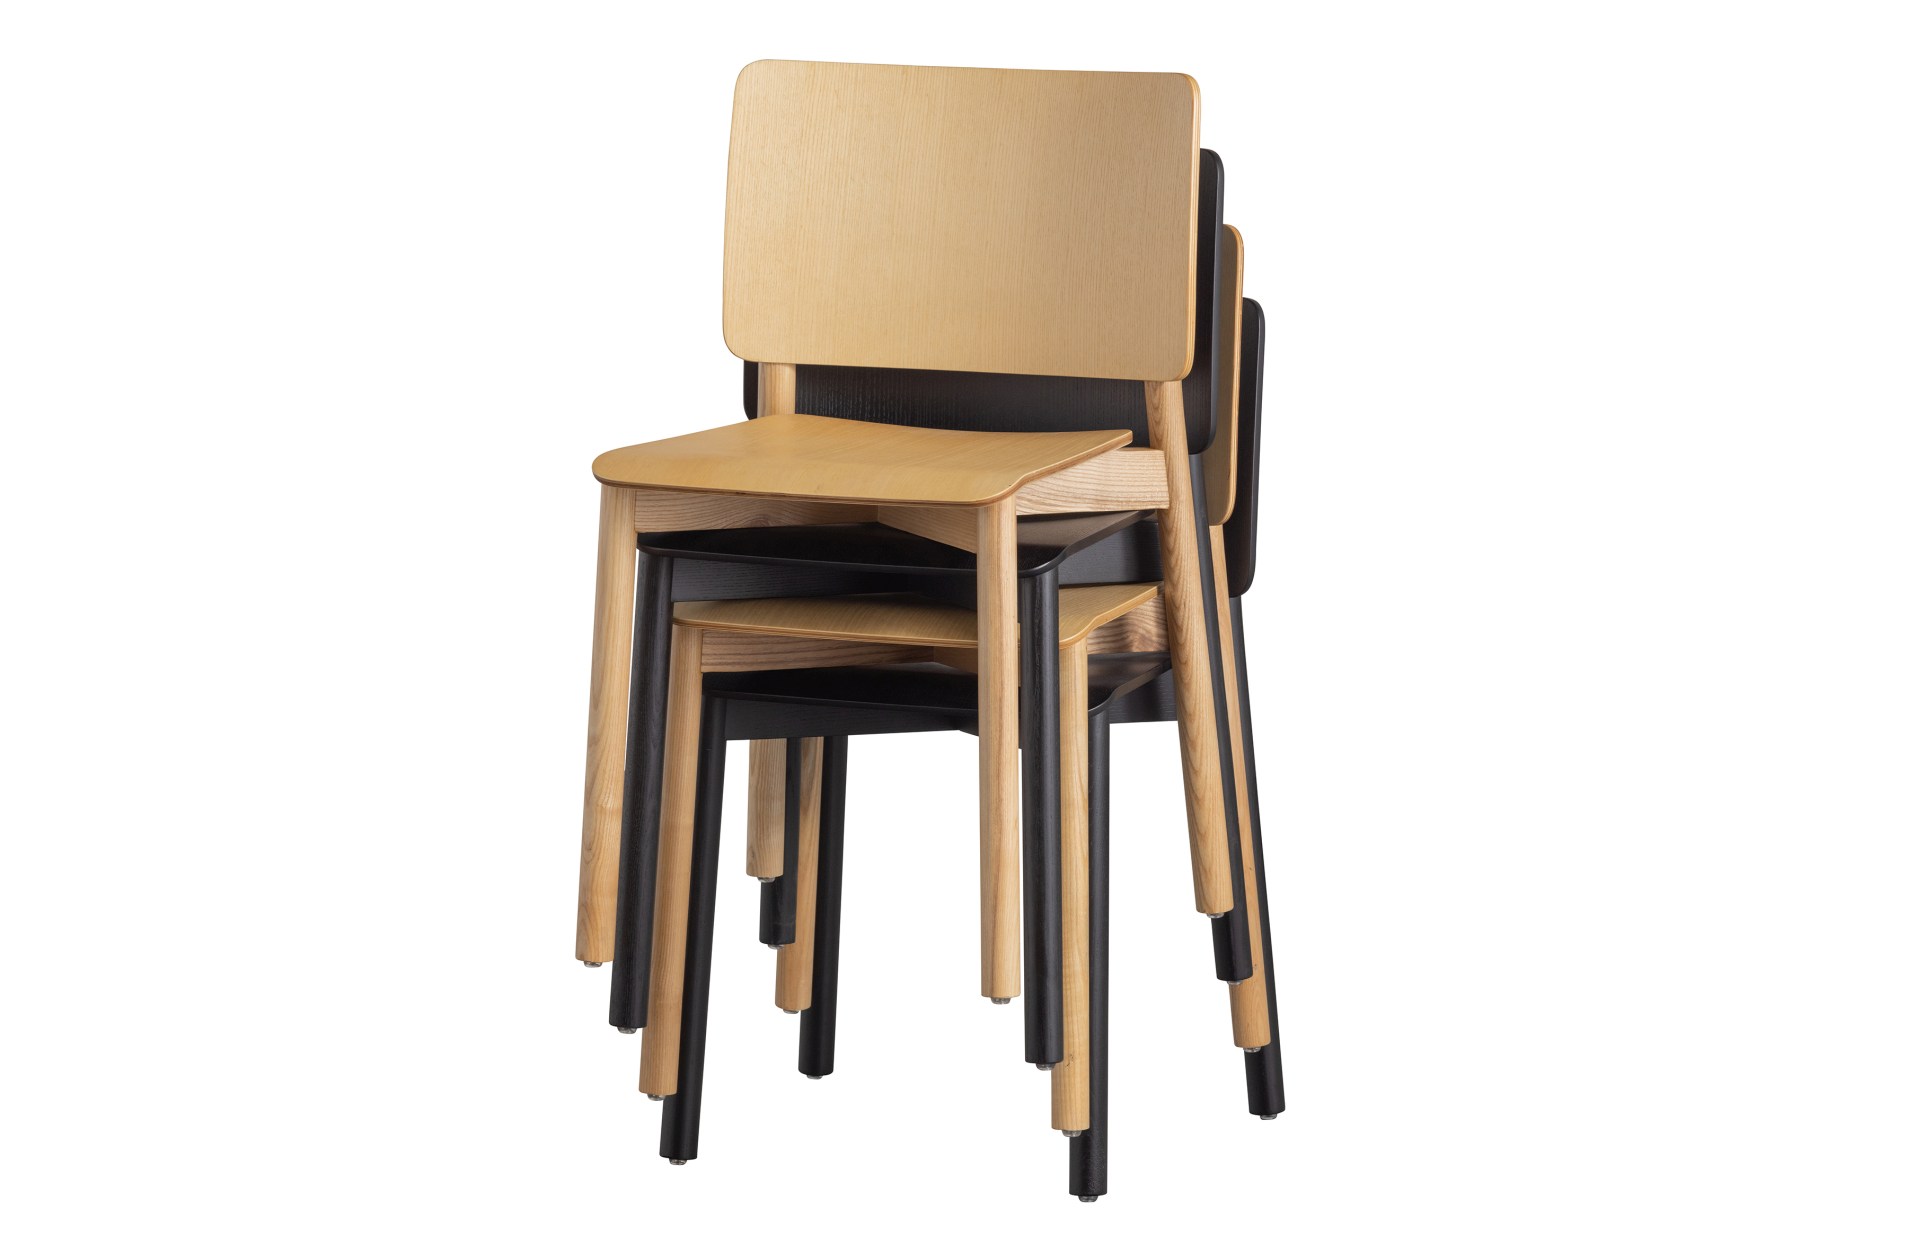 Der Esszimmerstuhl Karel wurde aus Eschenholz gefertigt und besitzt eine natürliche Farbe. Der Stuhl ist in zwei verschiedenen Varianten erhältlich